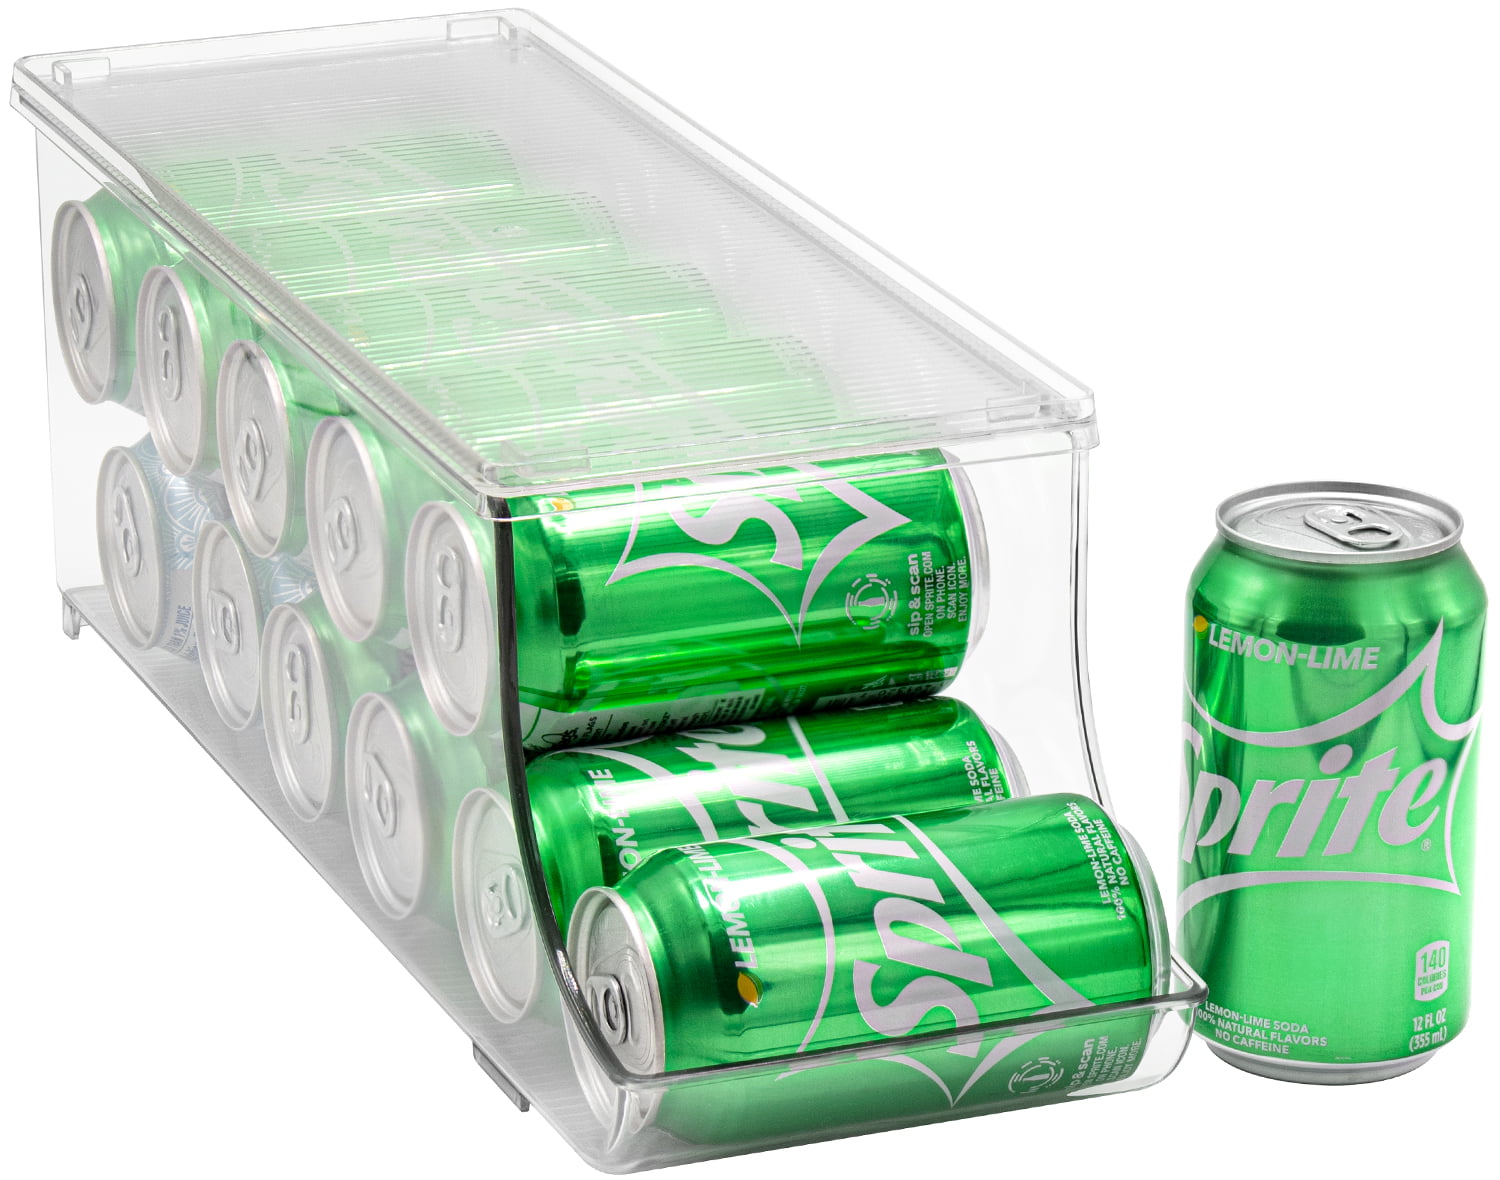 Canned Drink Box Fridge Can Storage Kitchen Bar Accessories Beverage Organizer